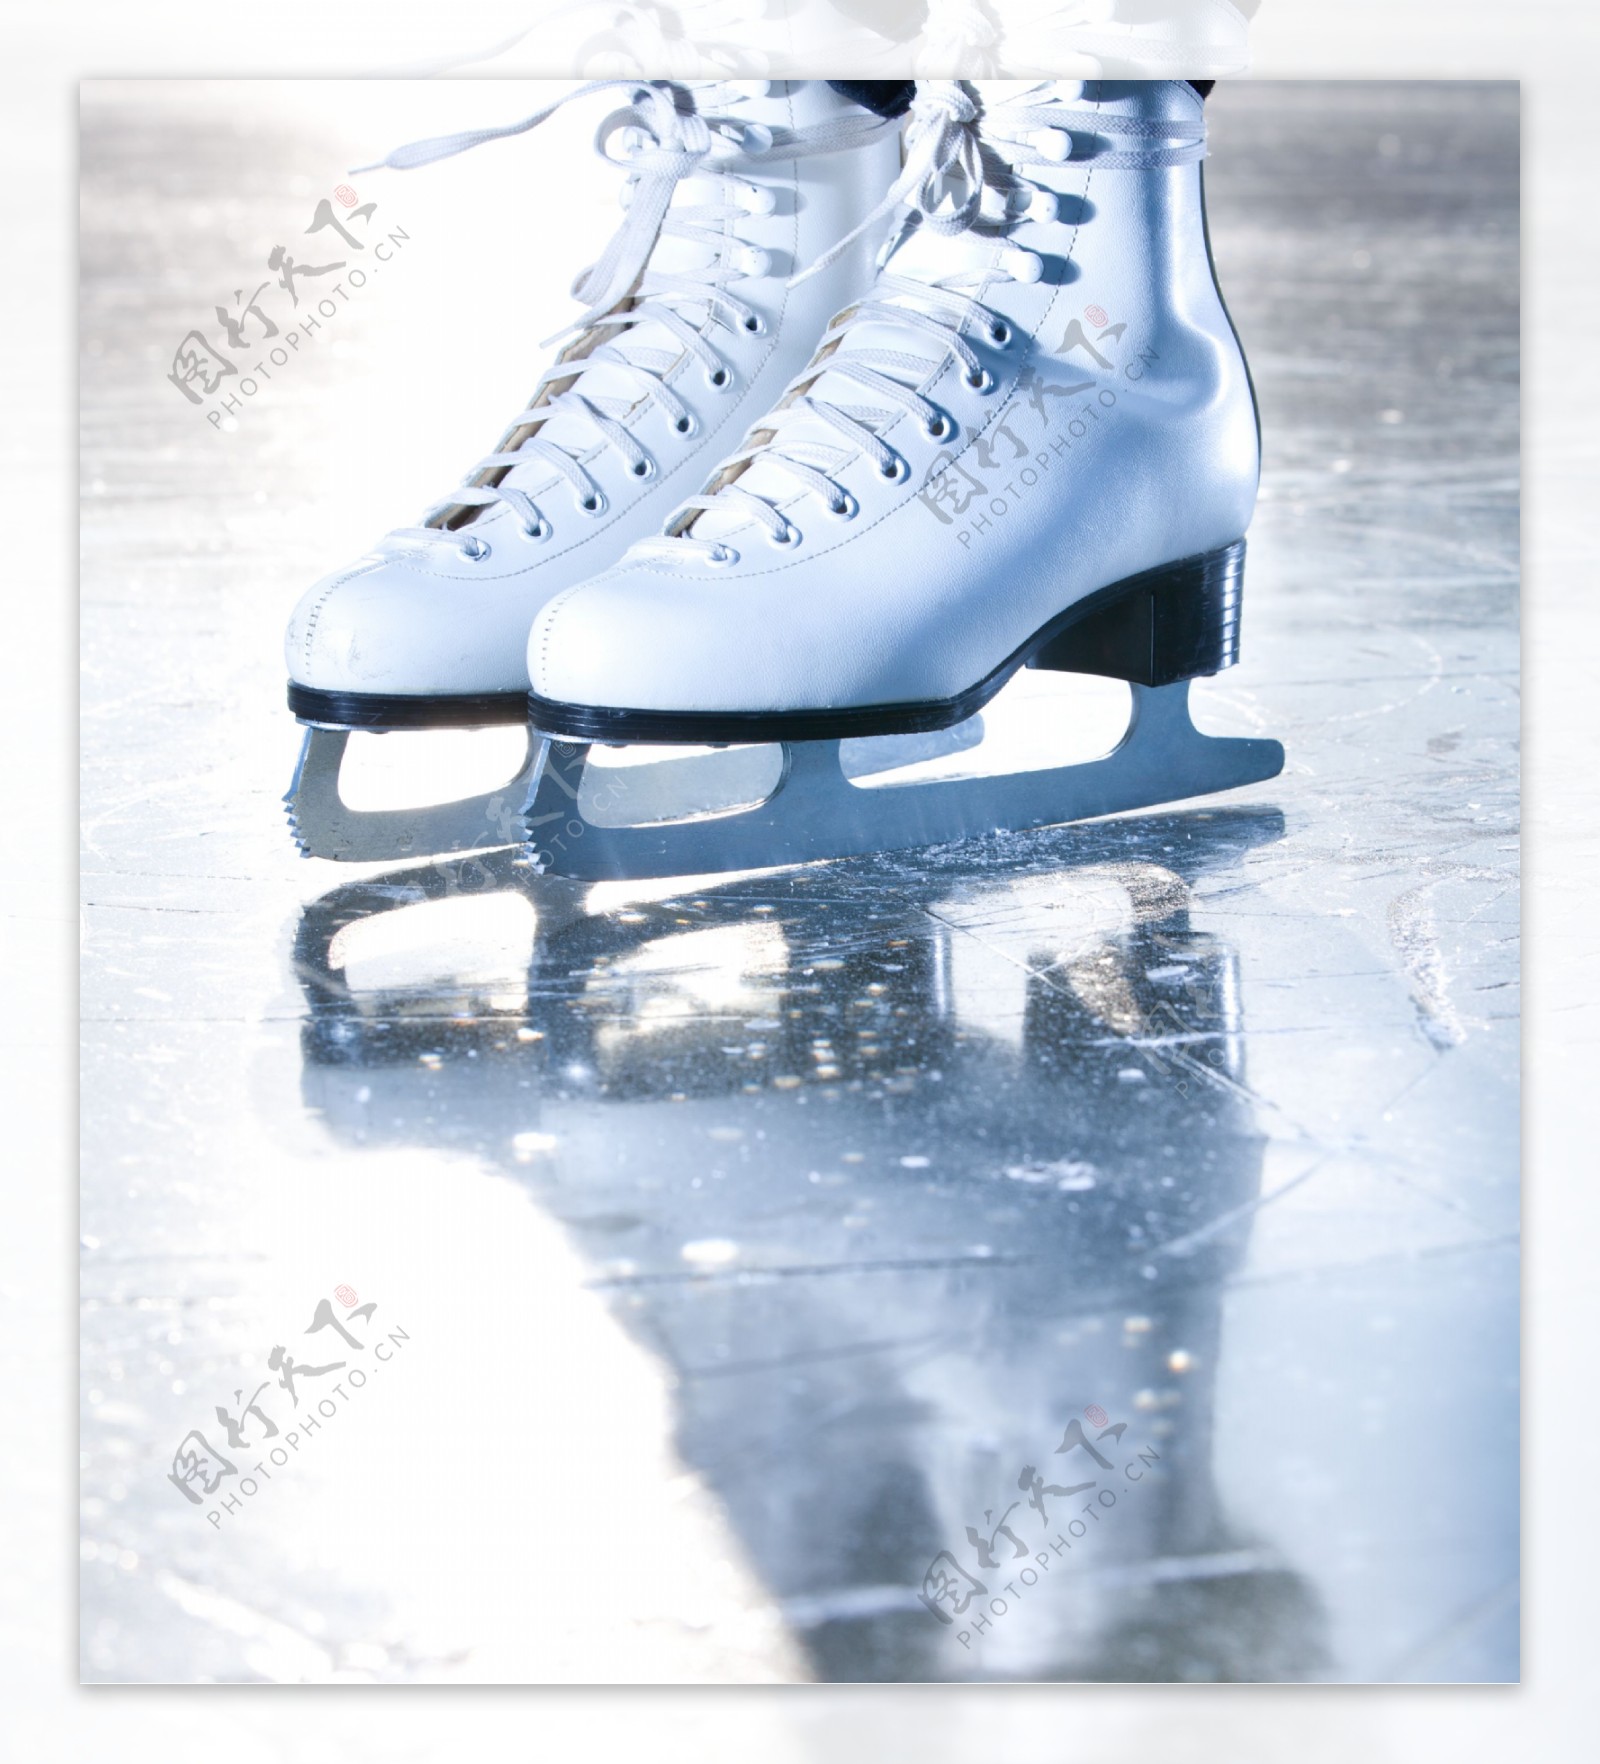 溜冰场上的溜冰鞋图片